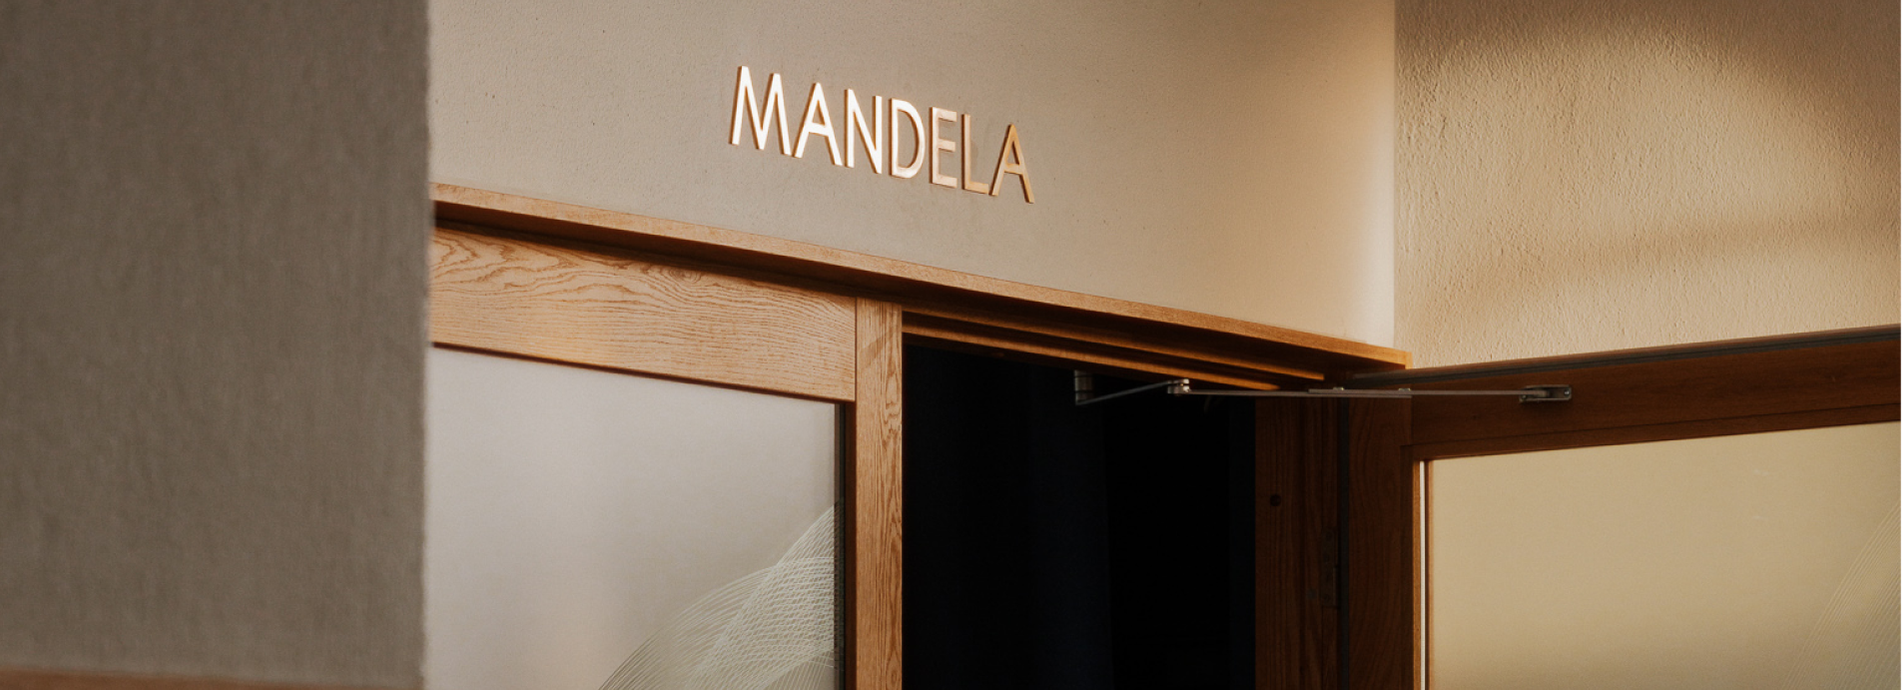 Showing the Mandela room entrance